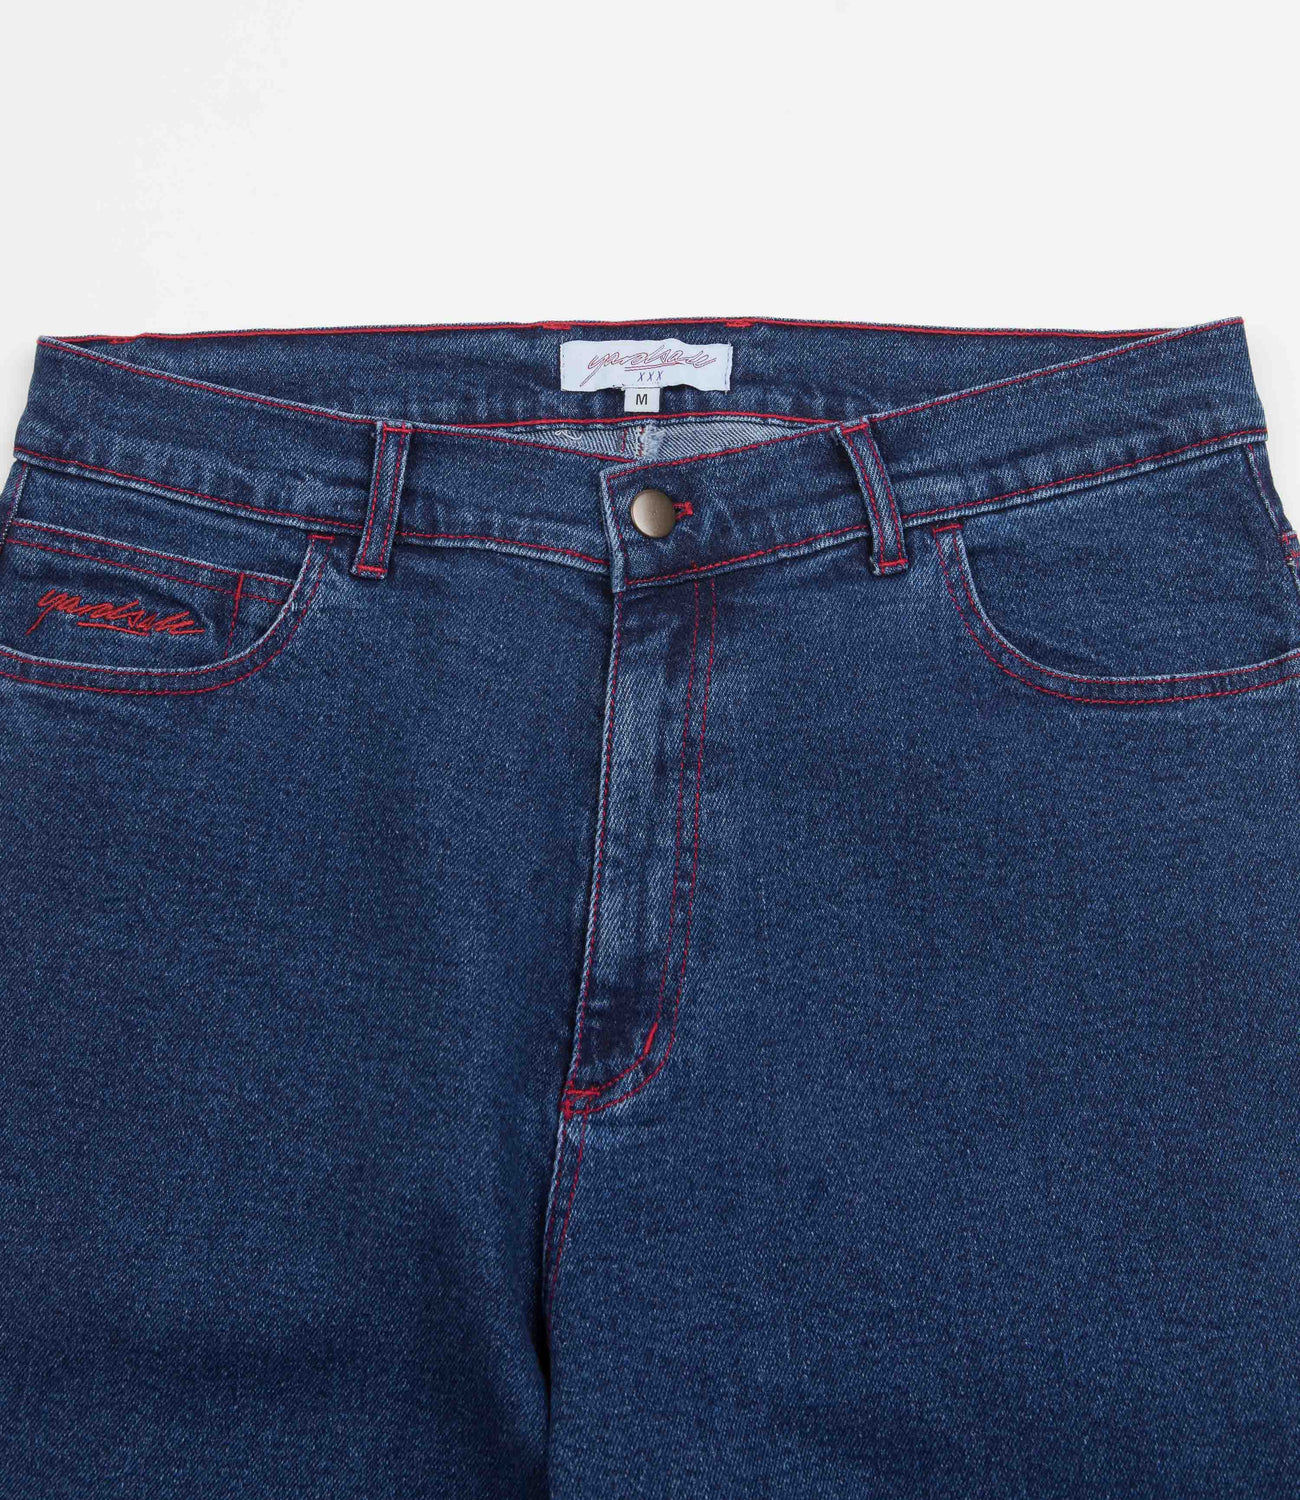 Yardsale Phantasy Jeans - Dark Denim | Flatspot